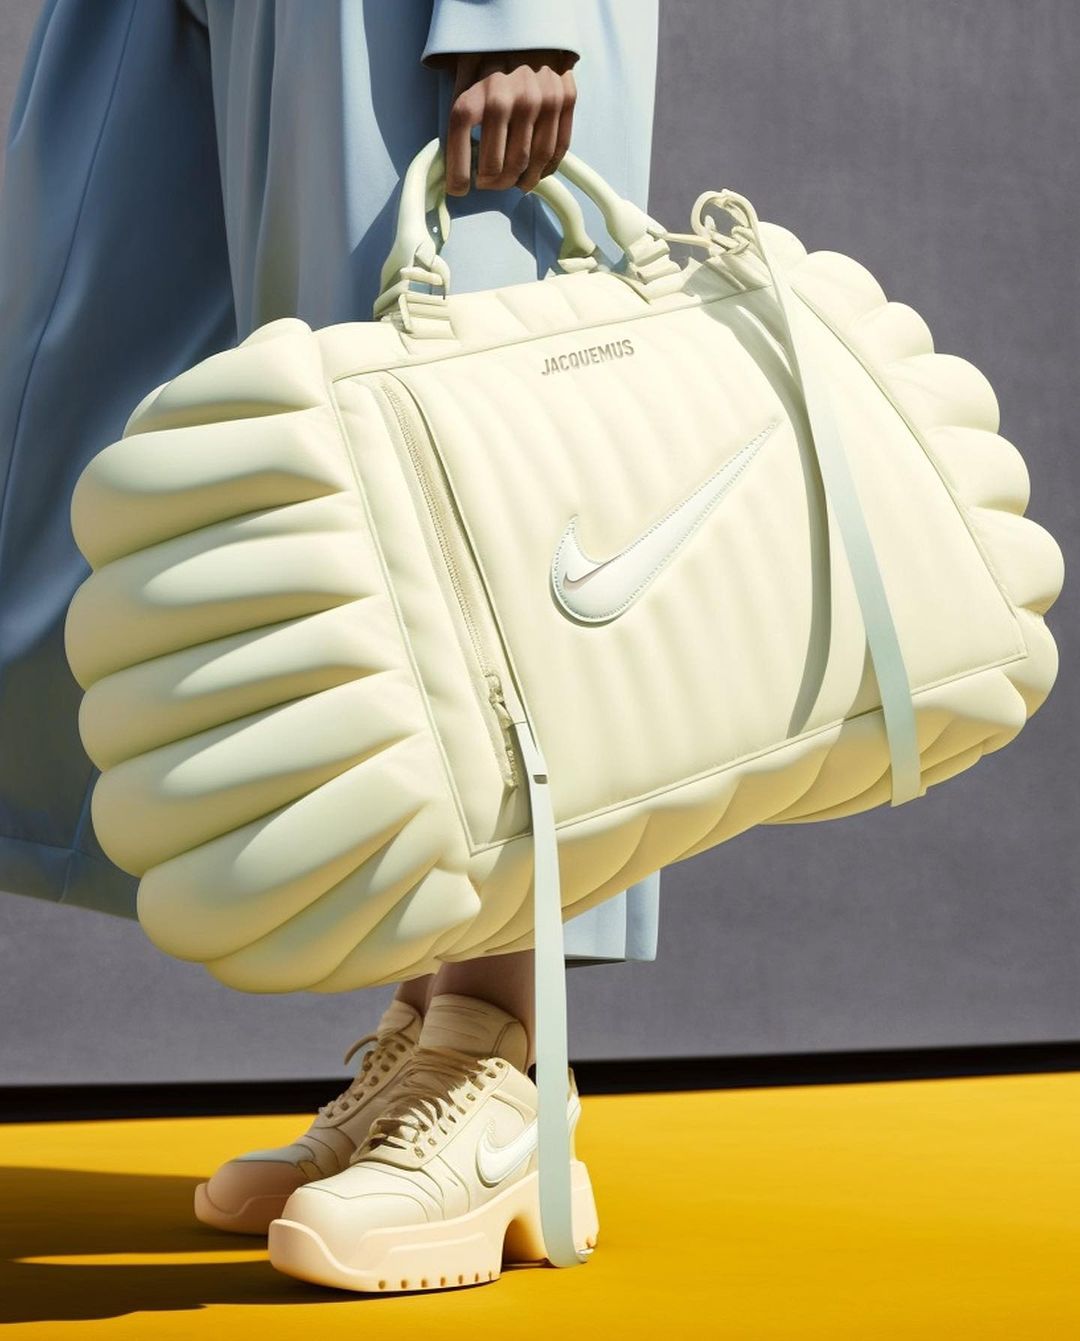 Fanovi poludjeli za virtualnom kolekcijom Jacquemus x Nike koju je nemoguće kupiti